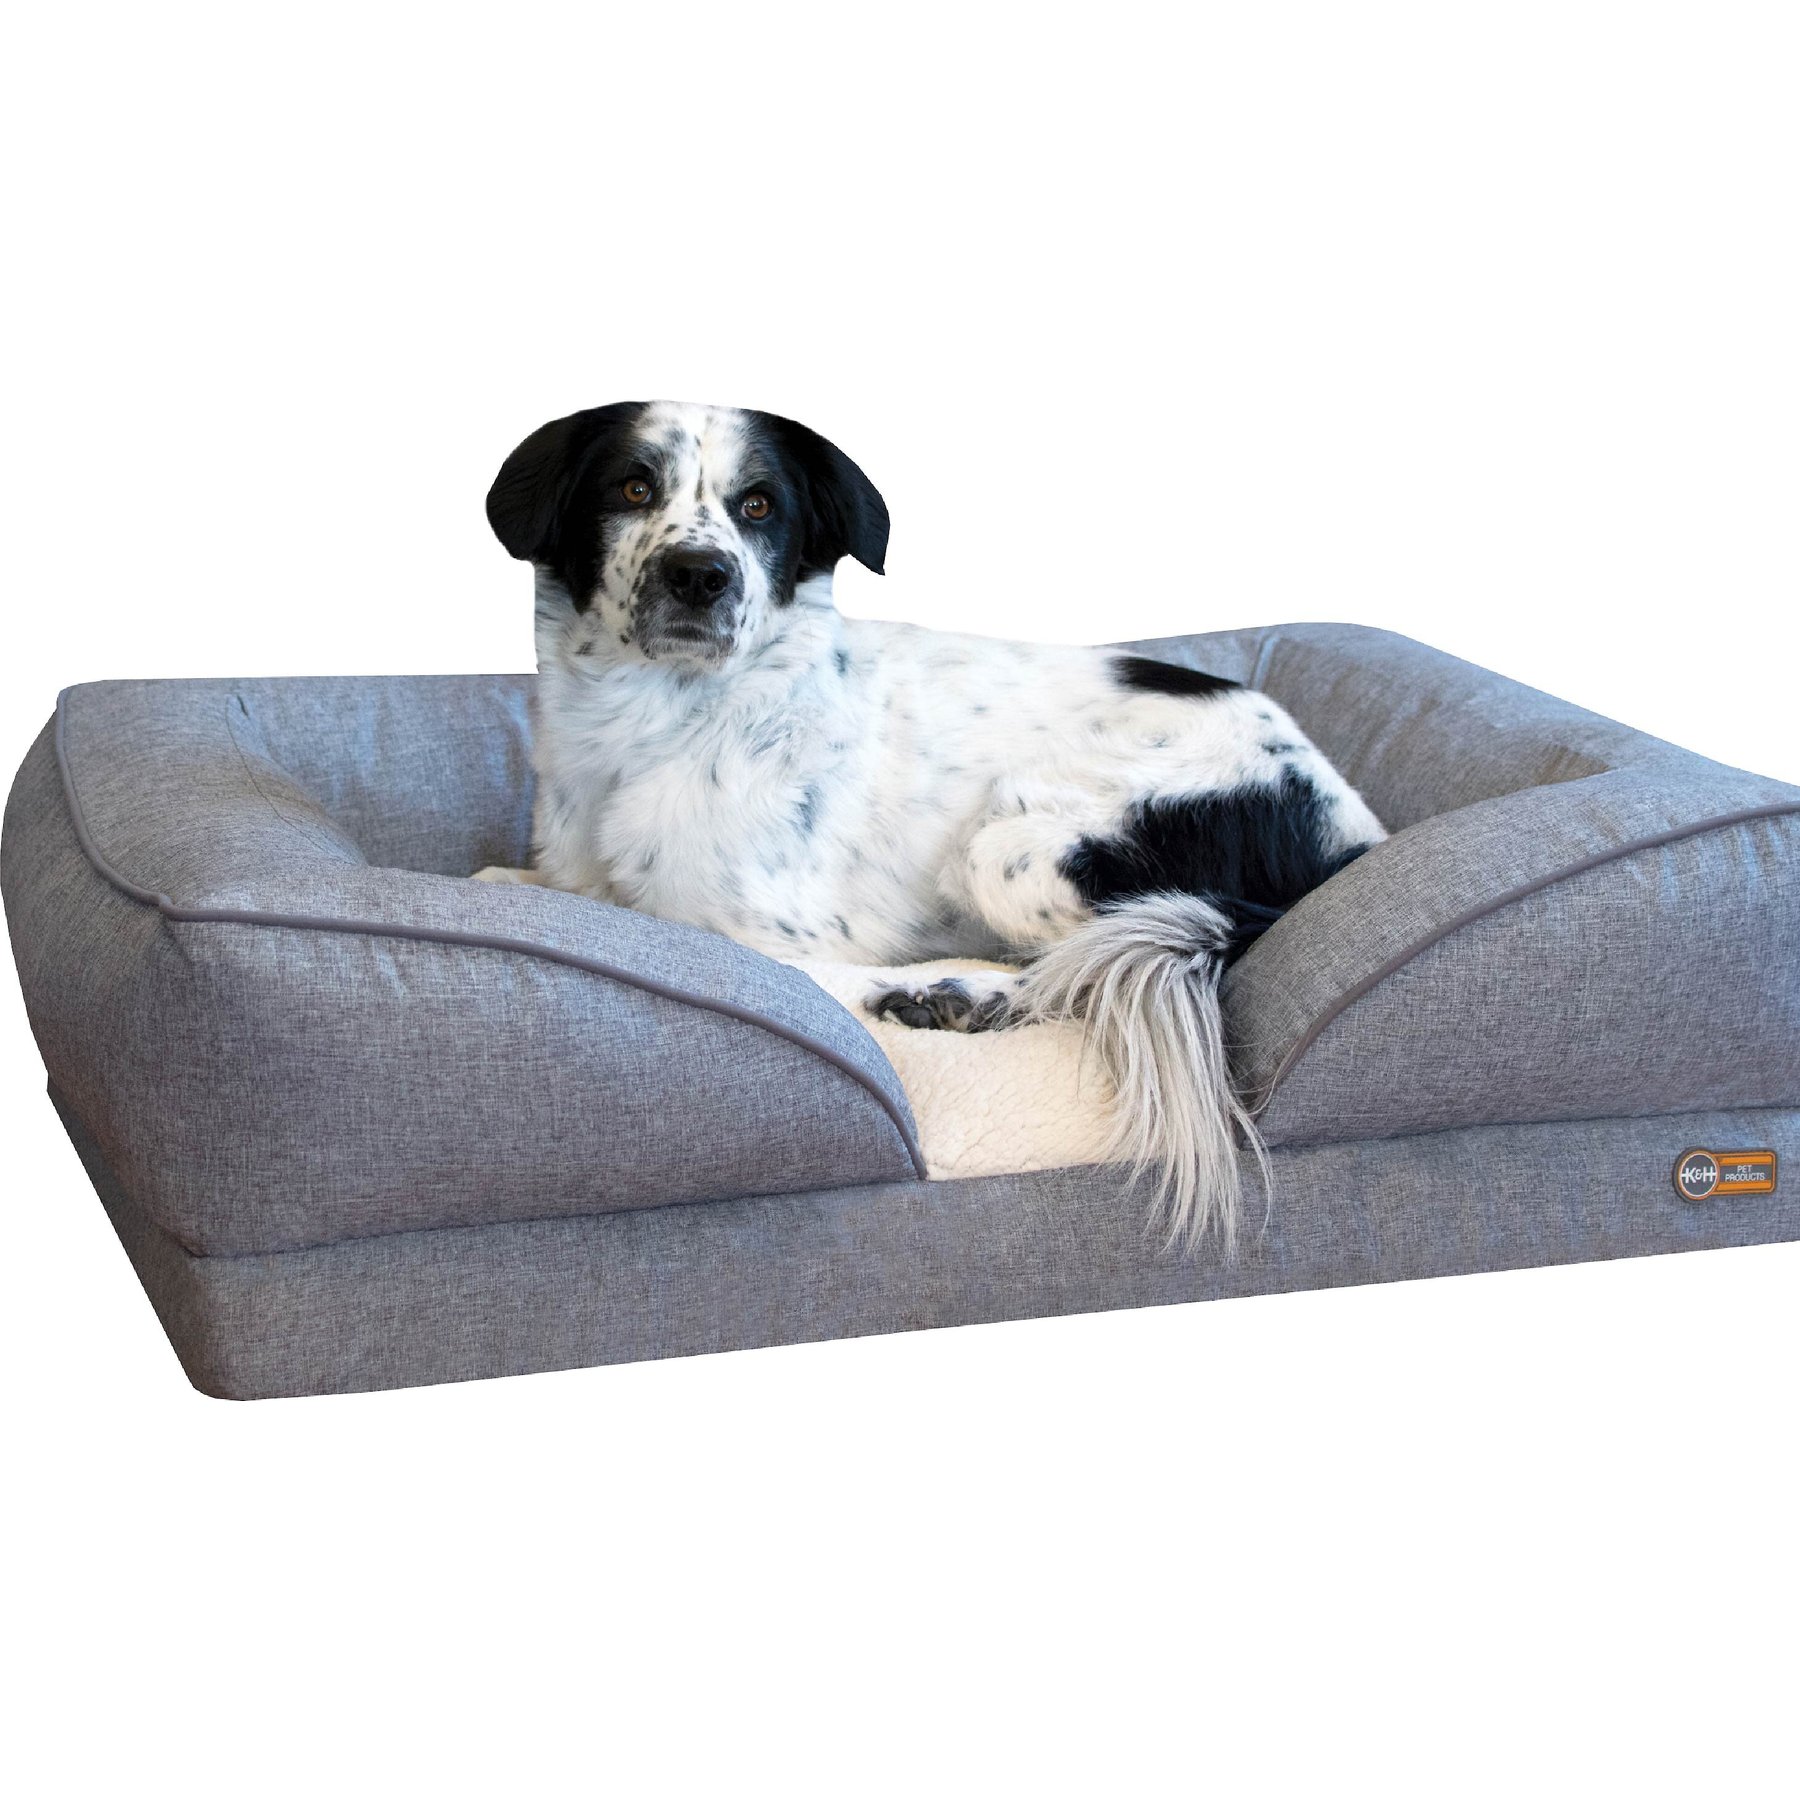 Arlee Memory Foam Sofa Style Pet Bed